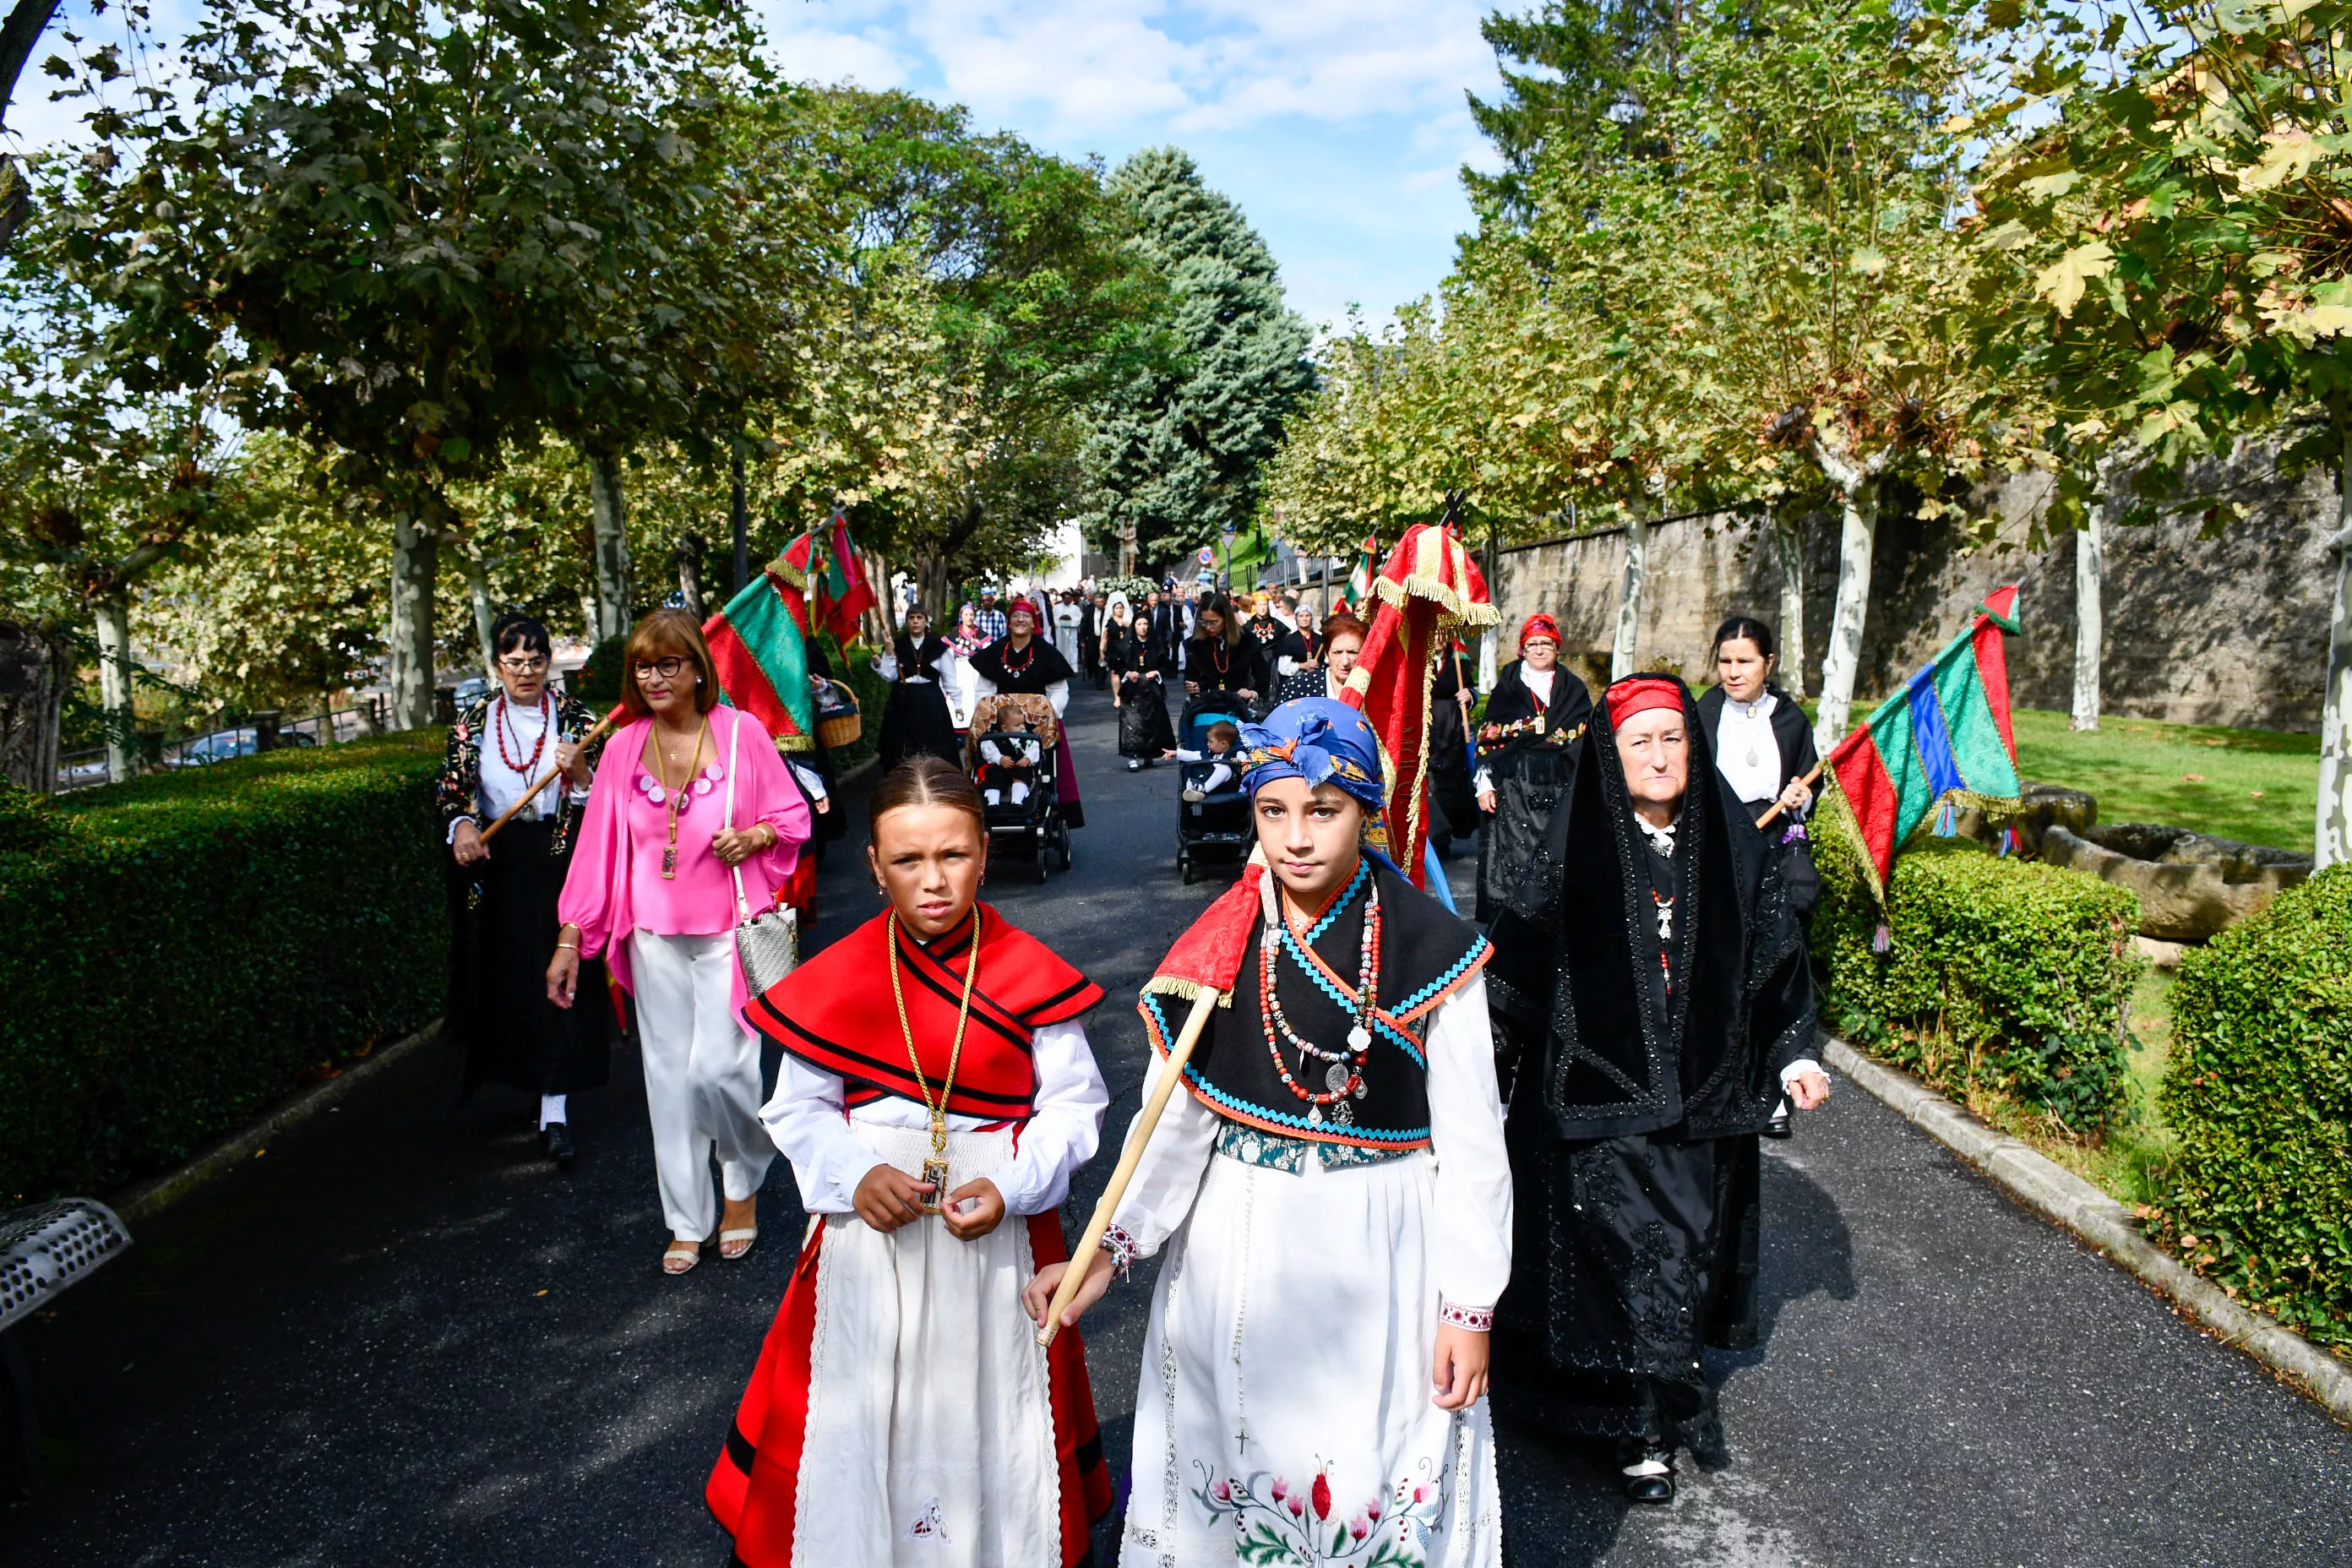  Tradicional procesión y comitiva de autoridades en el día del Cristín de Bembibre  (63)